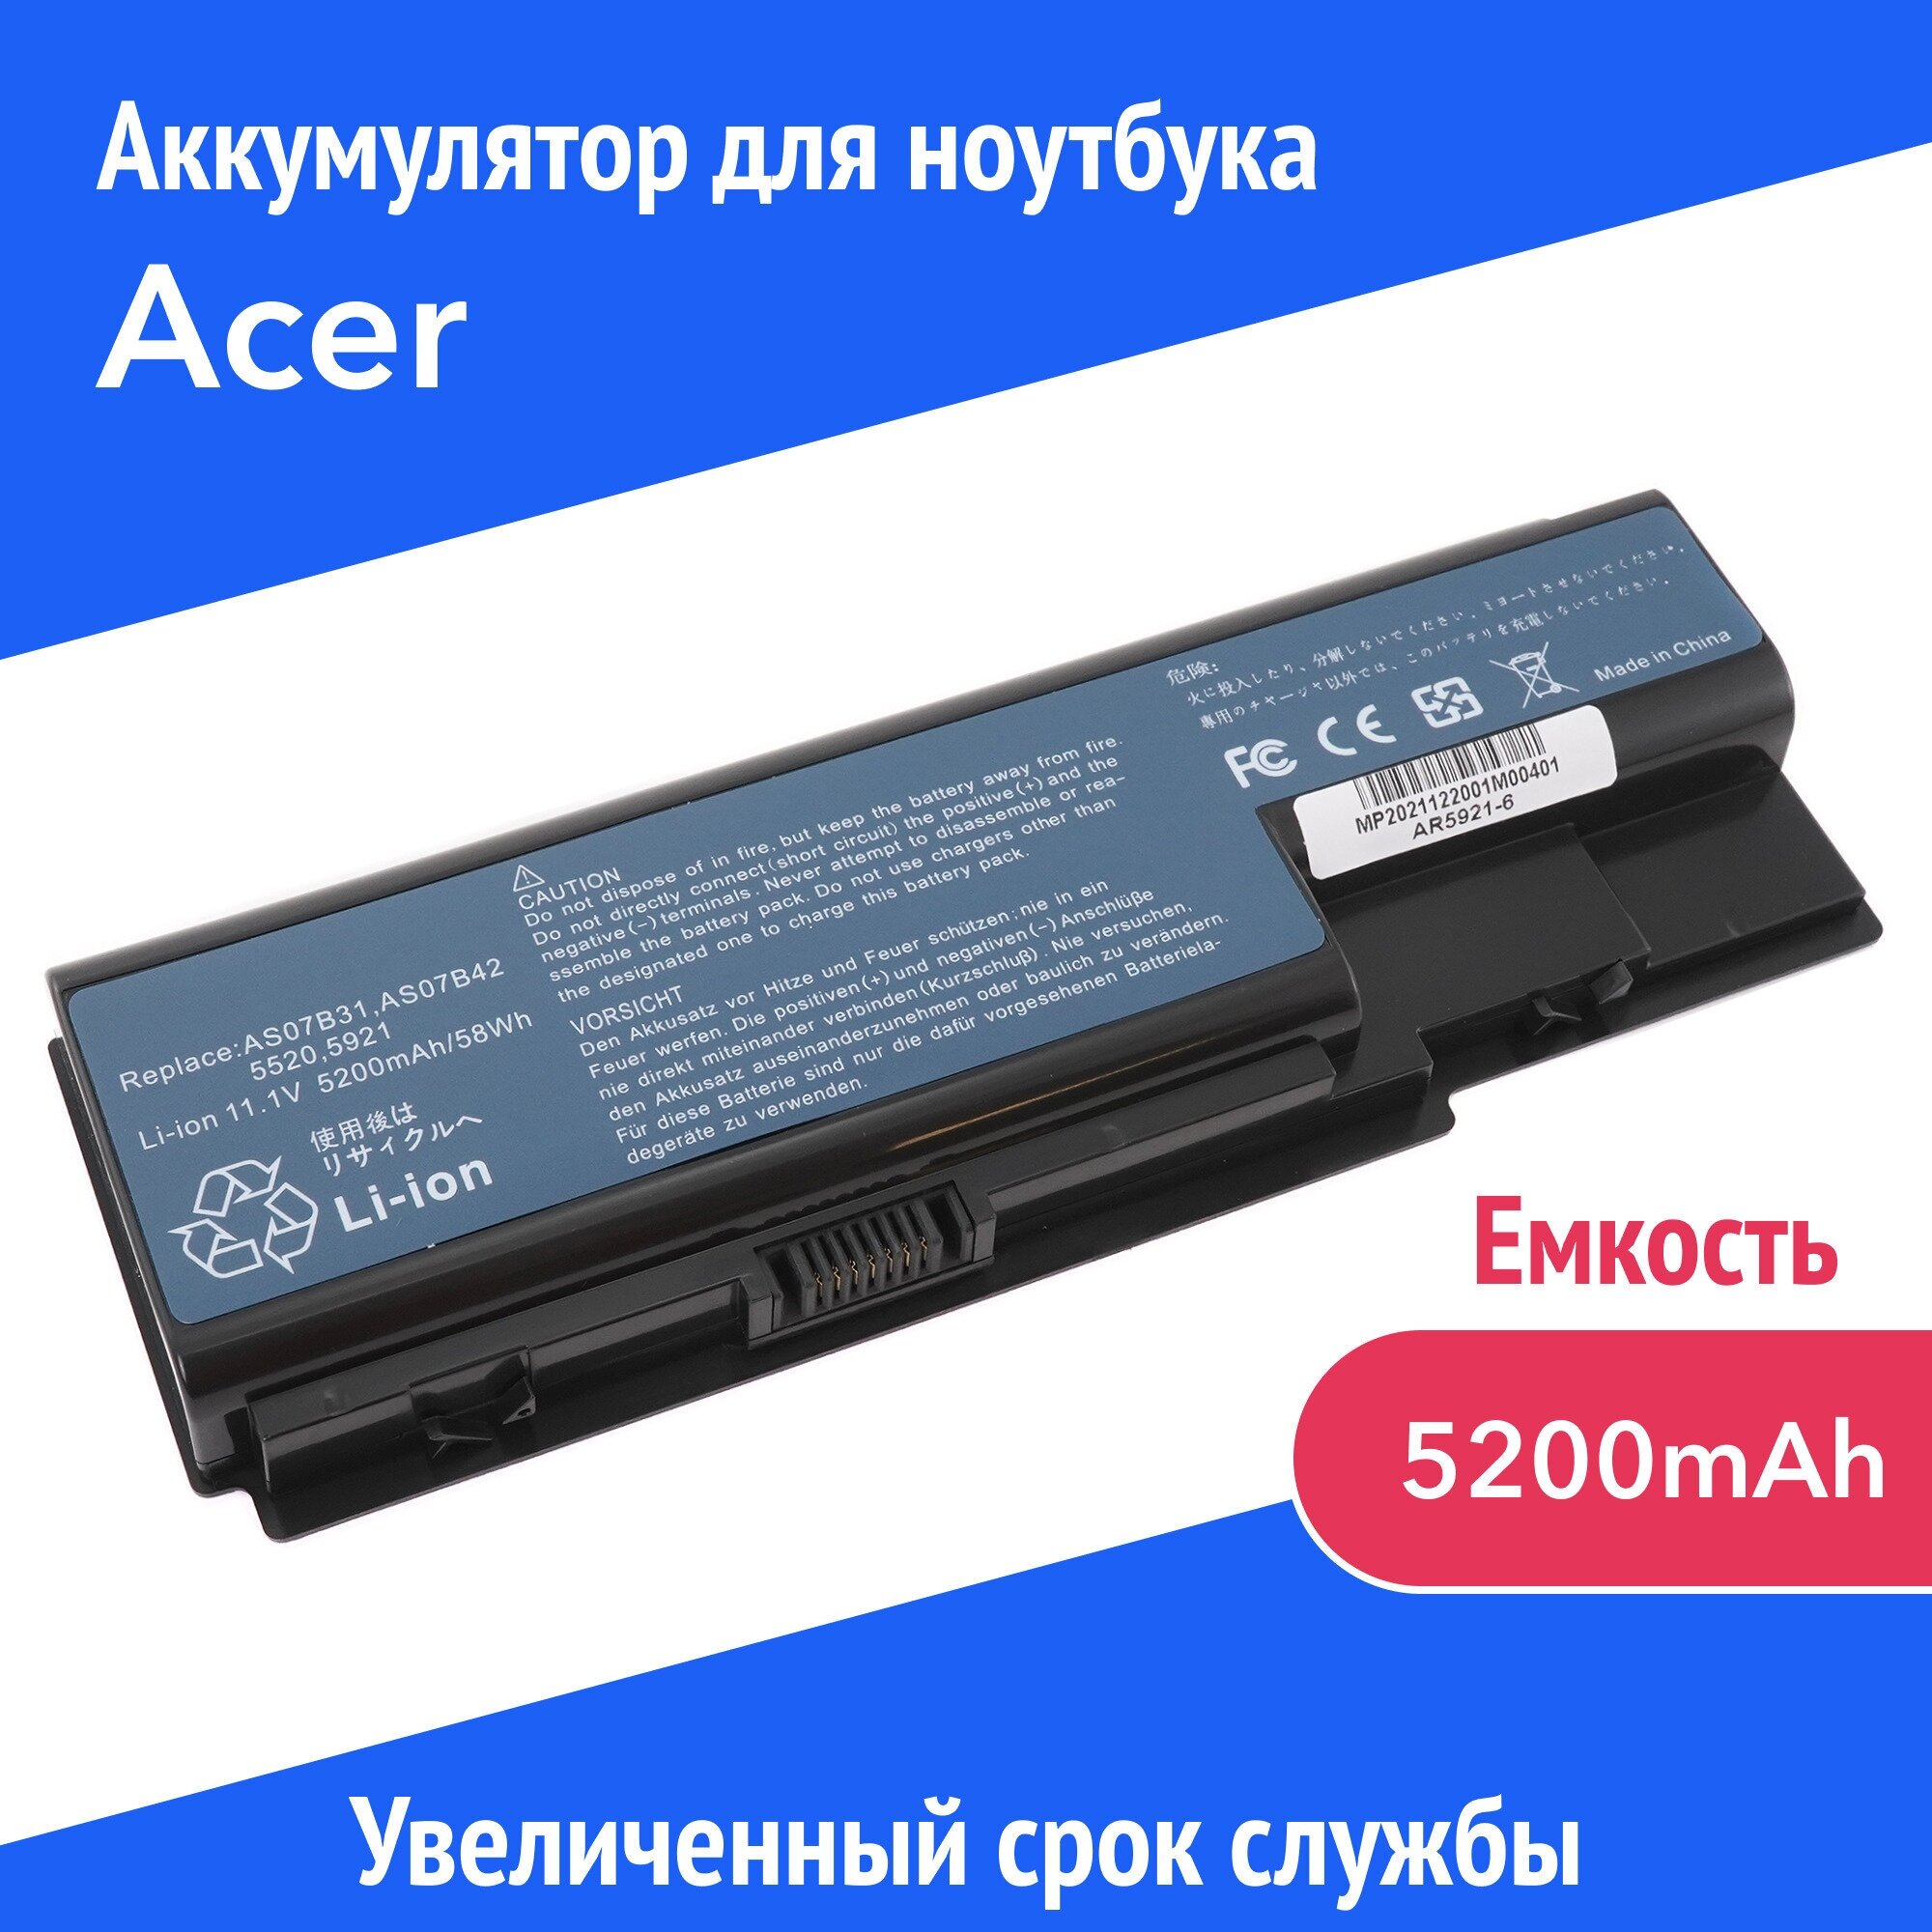 Аккумулятор AS07B31 для Acer Aspire 5520 / 5530 / 6530G / 7520G / 7730G (AS07B71 JDW50) 11.1 V